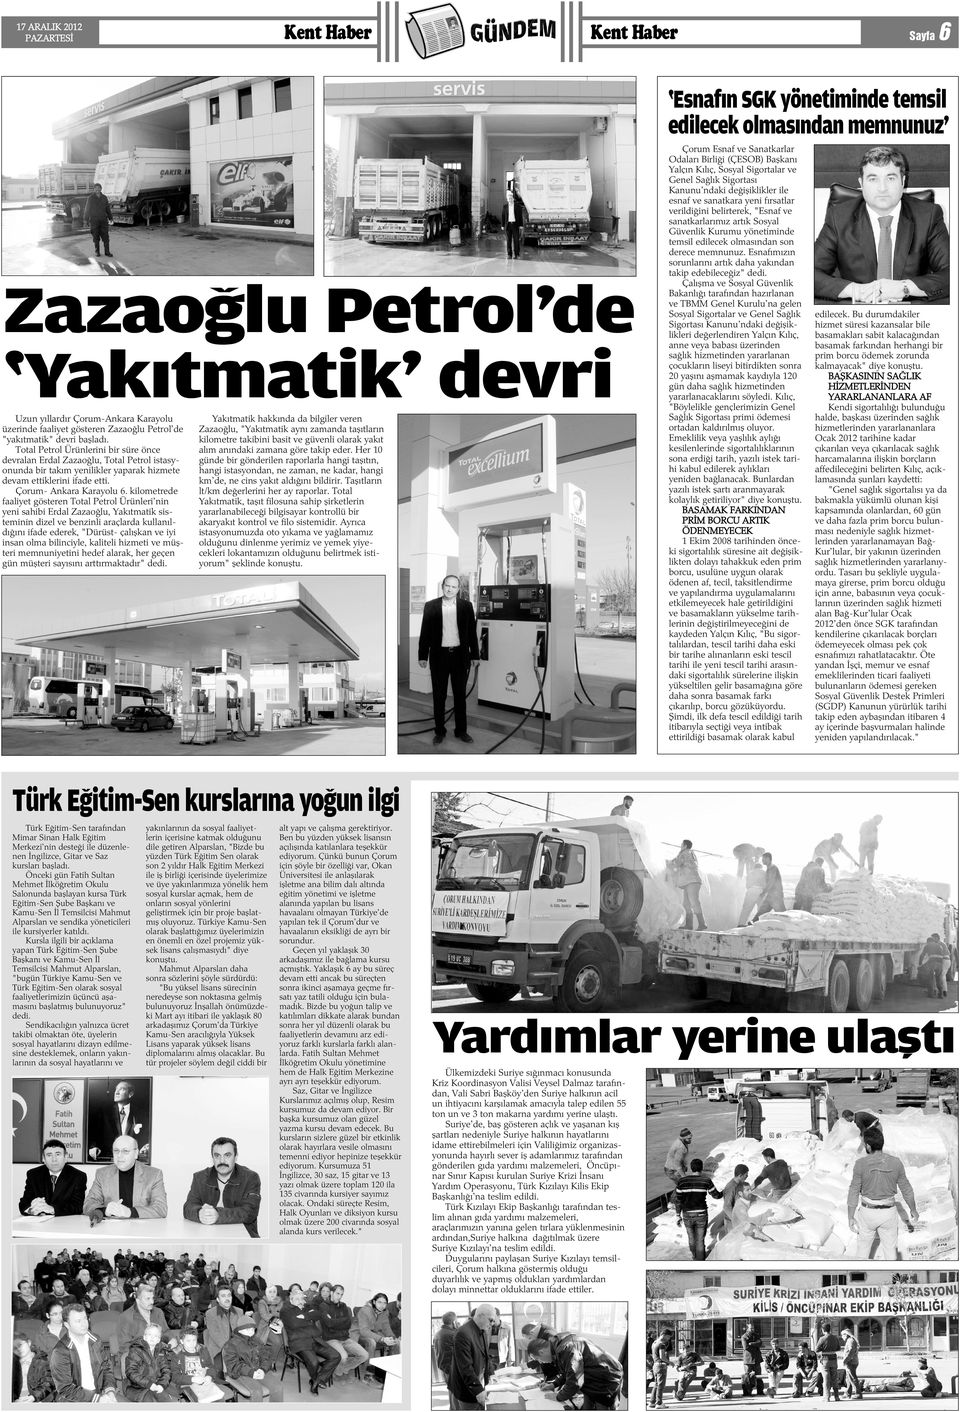 Total Petrol Ürünlerini bir süre önce devralan Erdal Zazaoðlu, Total Petrol istasyonunda bir takým yenilikler yaparak hizmete devam ettiklerini ifade etti. Çorum- Ankara Karayolu 6.